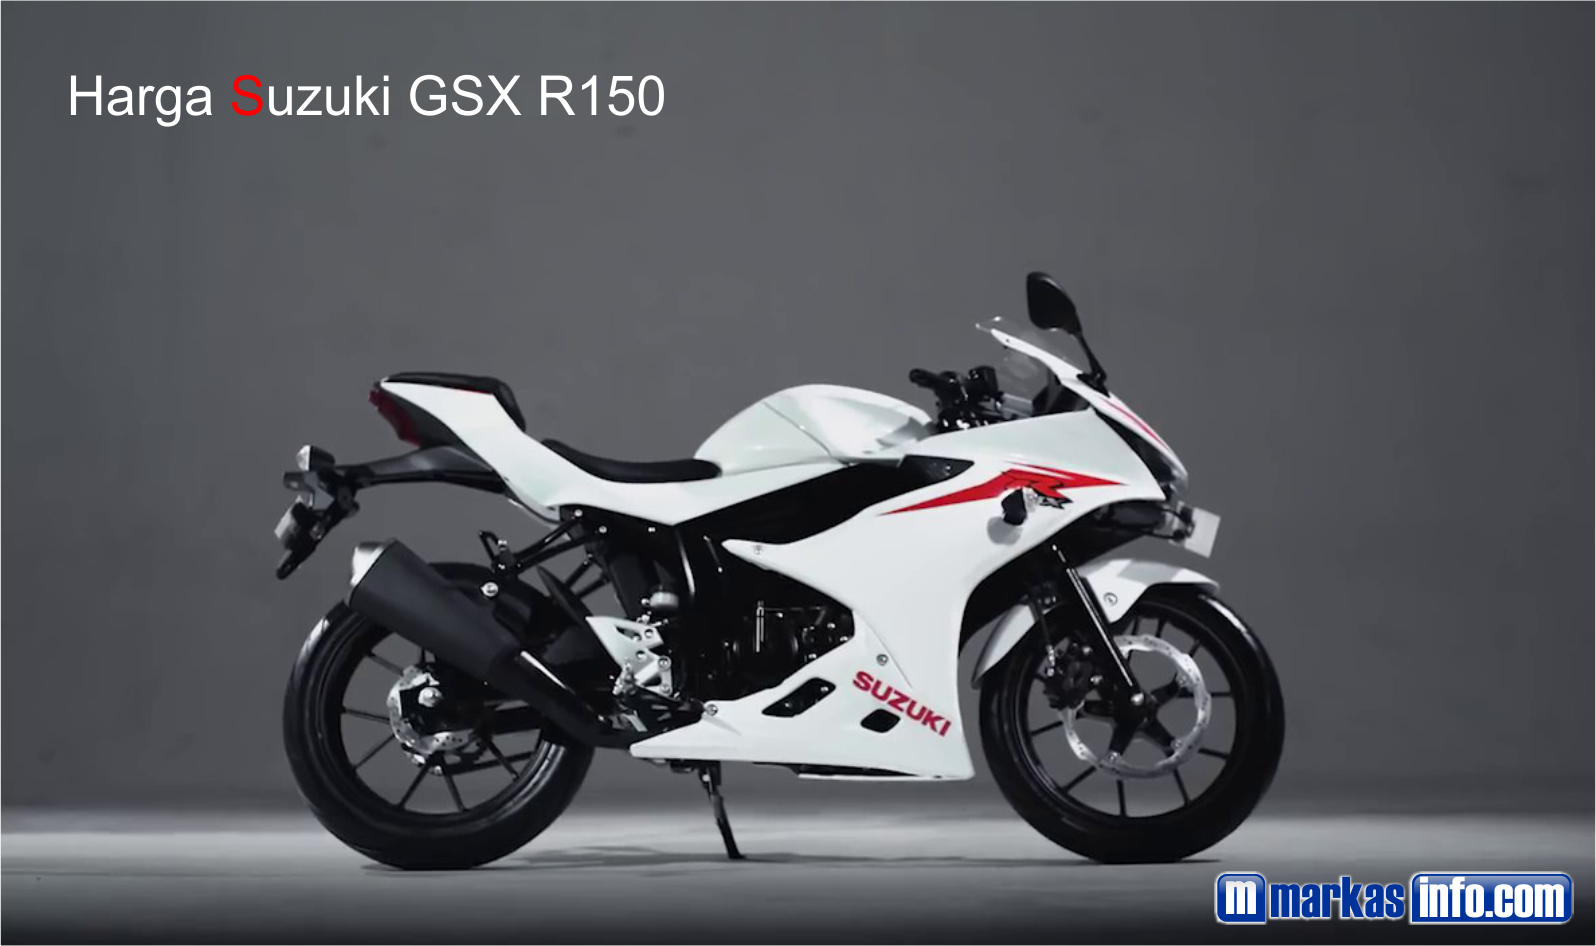 Harga suzuki GSX R150 Terbaru 2021 | Markas Info